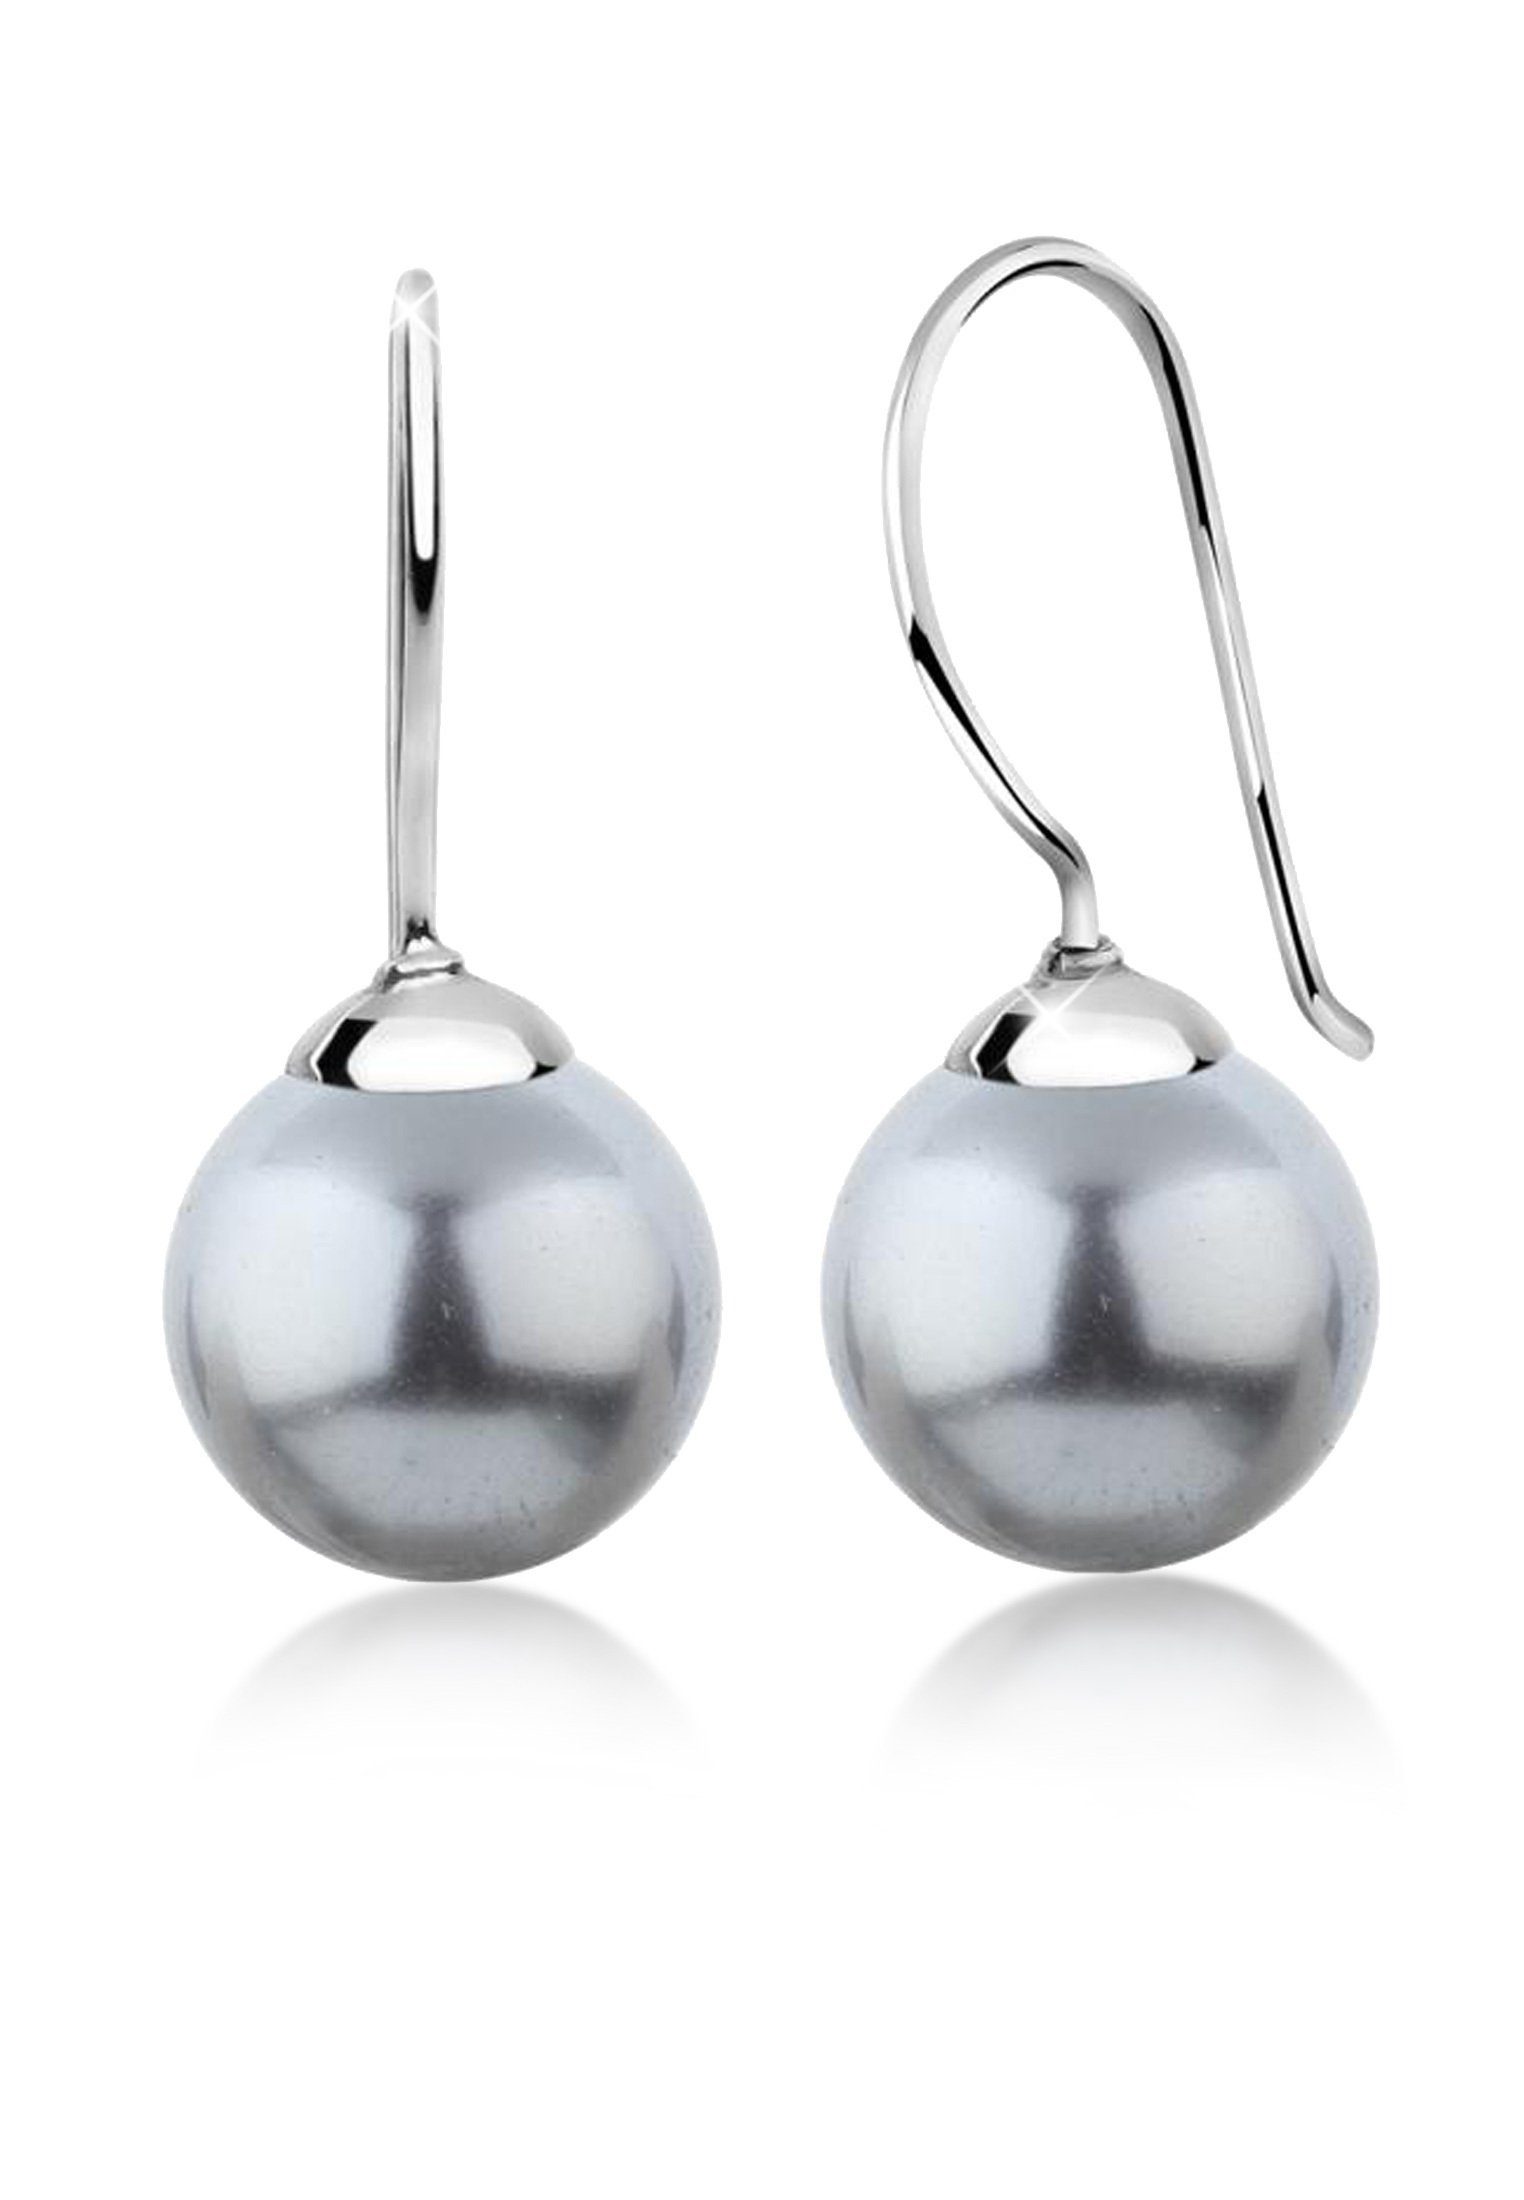 Nenalina Paar Ohrhänger Hänger Basic Synthetische Perle 925 Silber